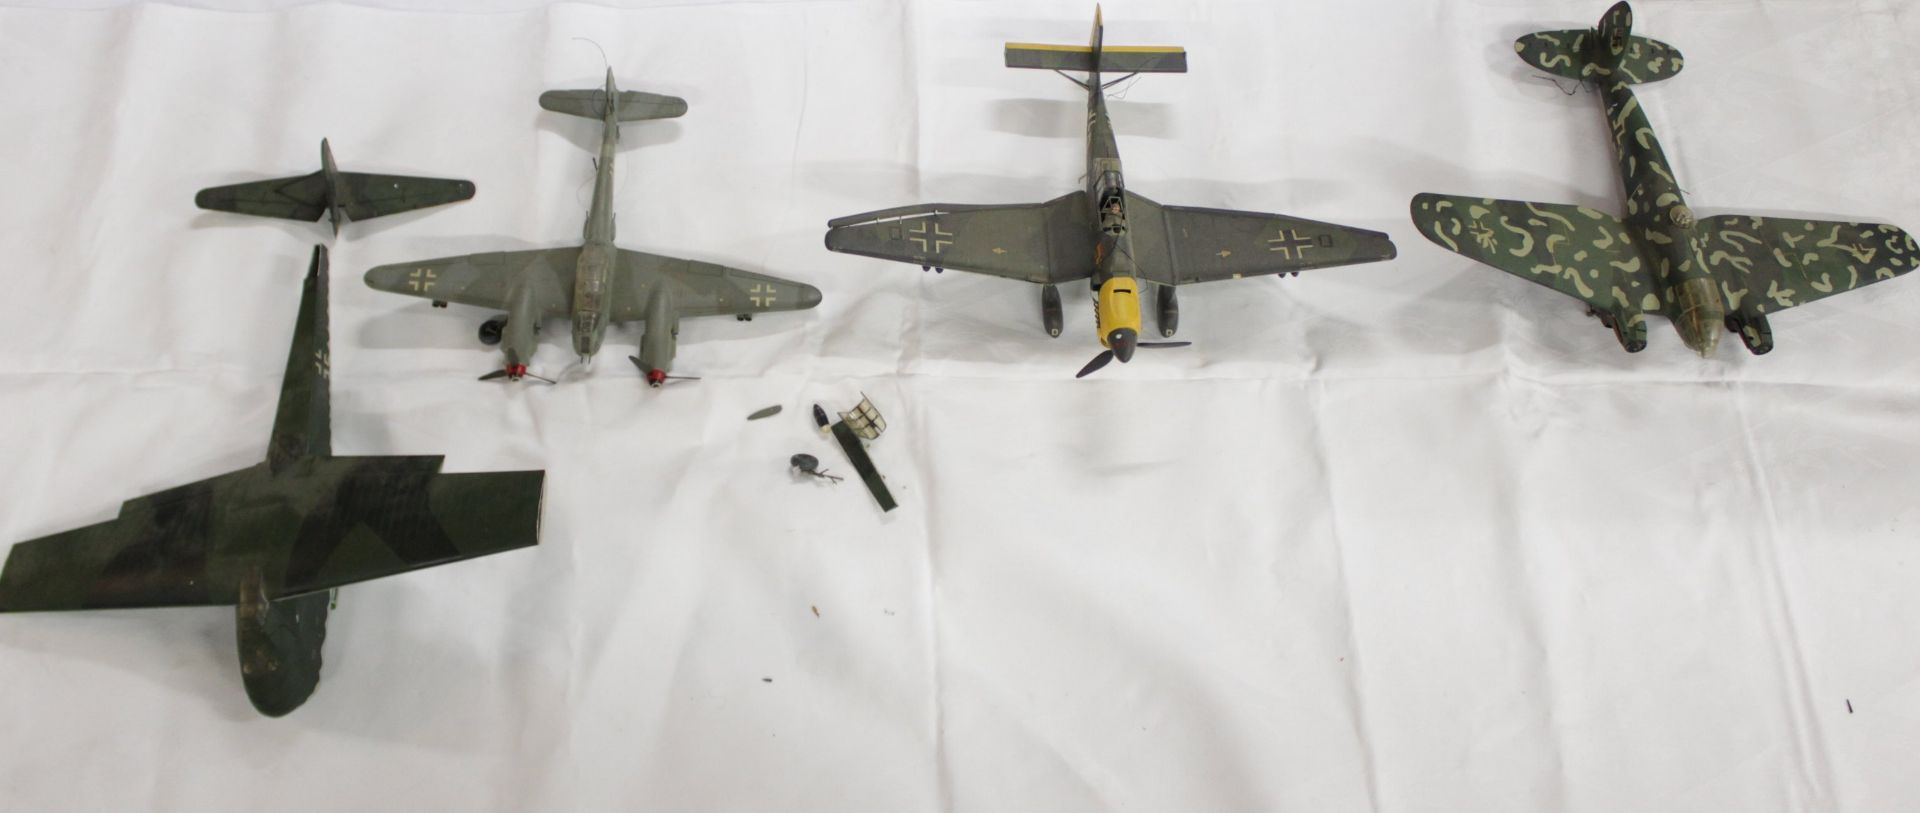 Konvolut div. Modell-Flugzeuge, meist mit Beschädigung (Teile lose, abgebrochen etc.), Vollständigk - Image 4 of 15